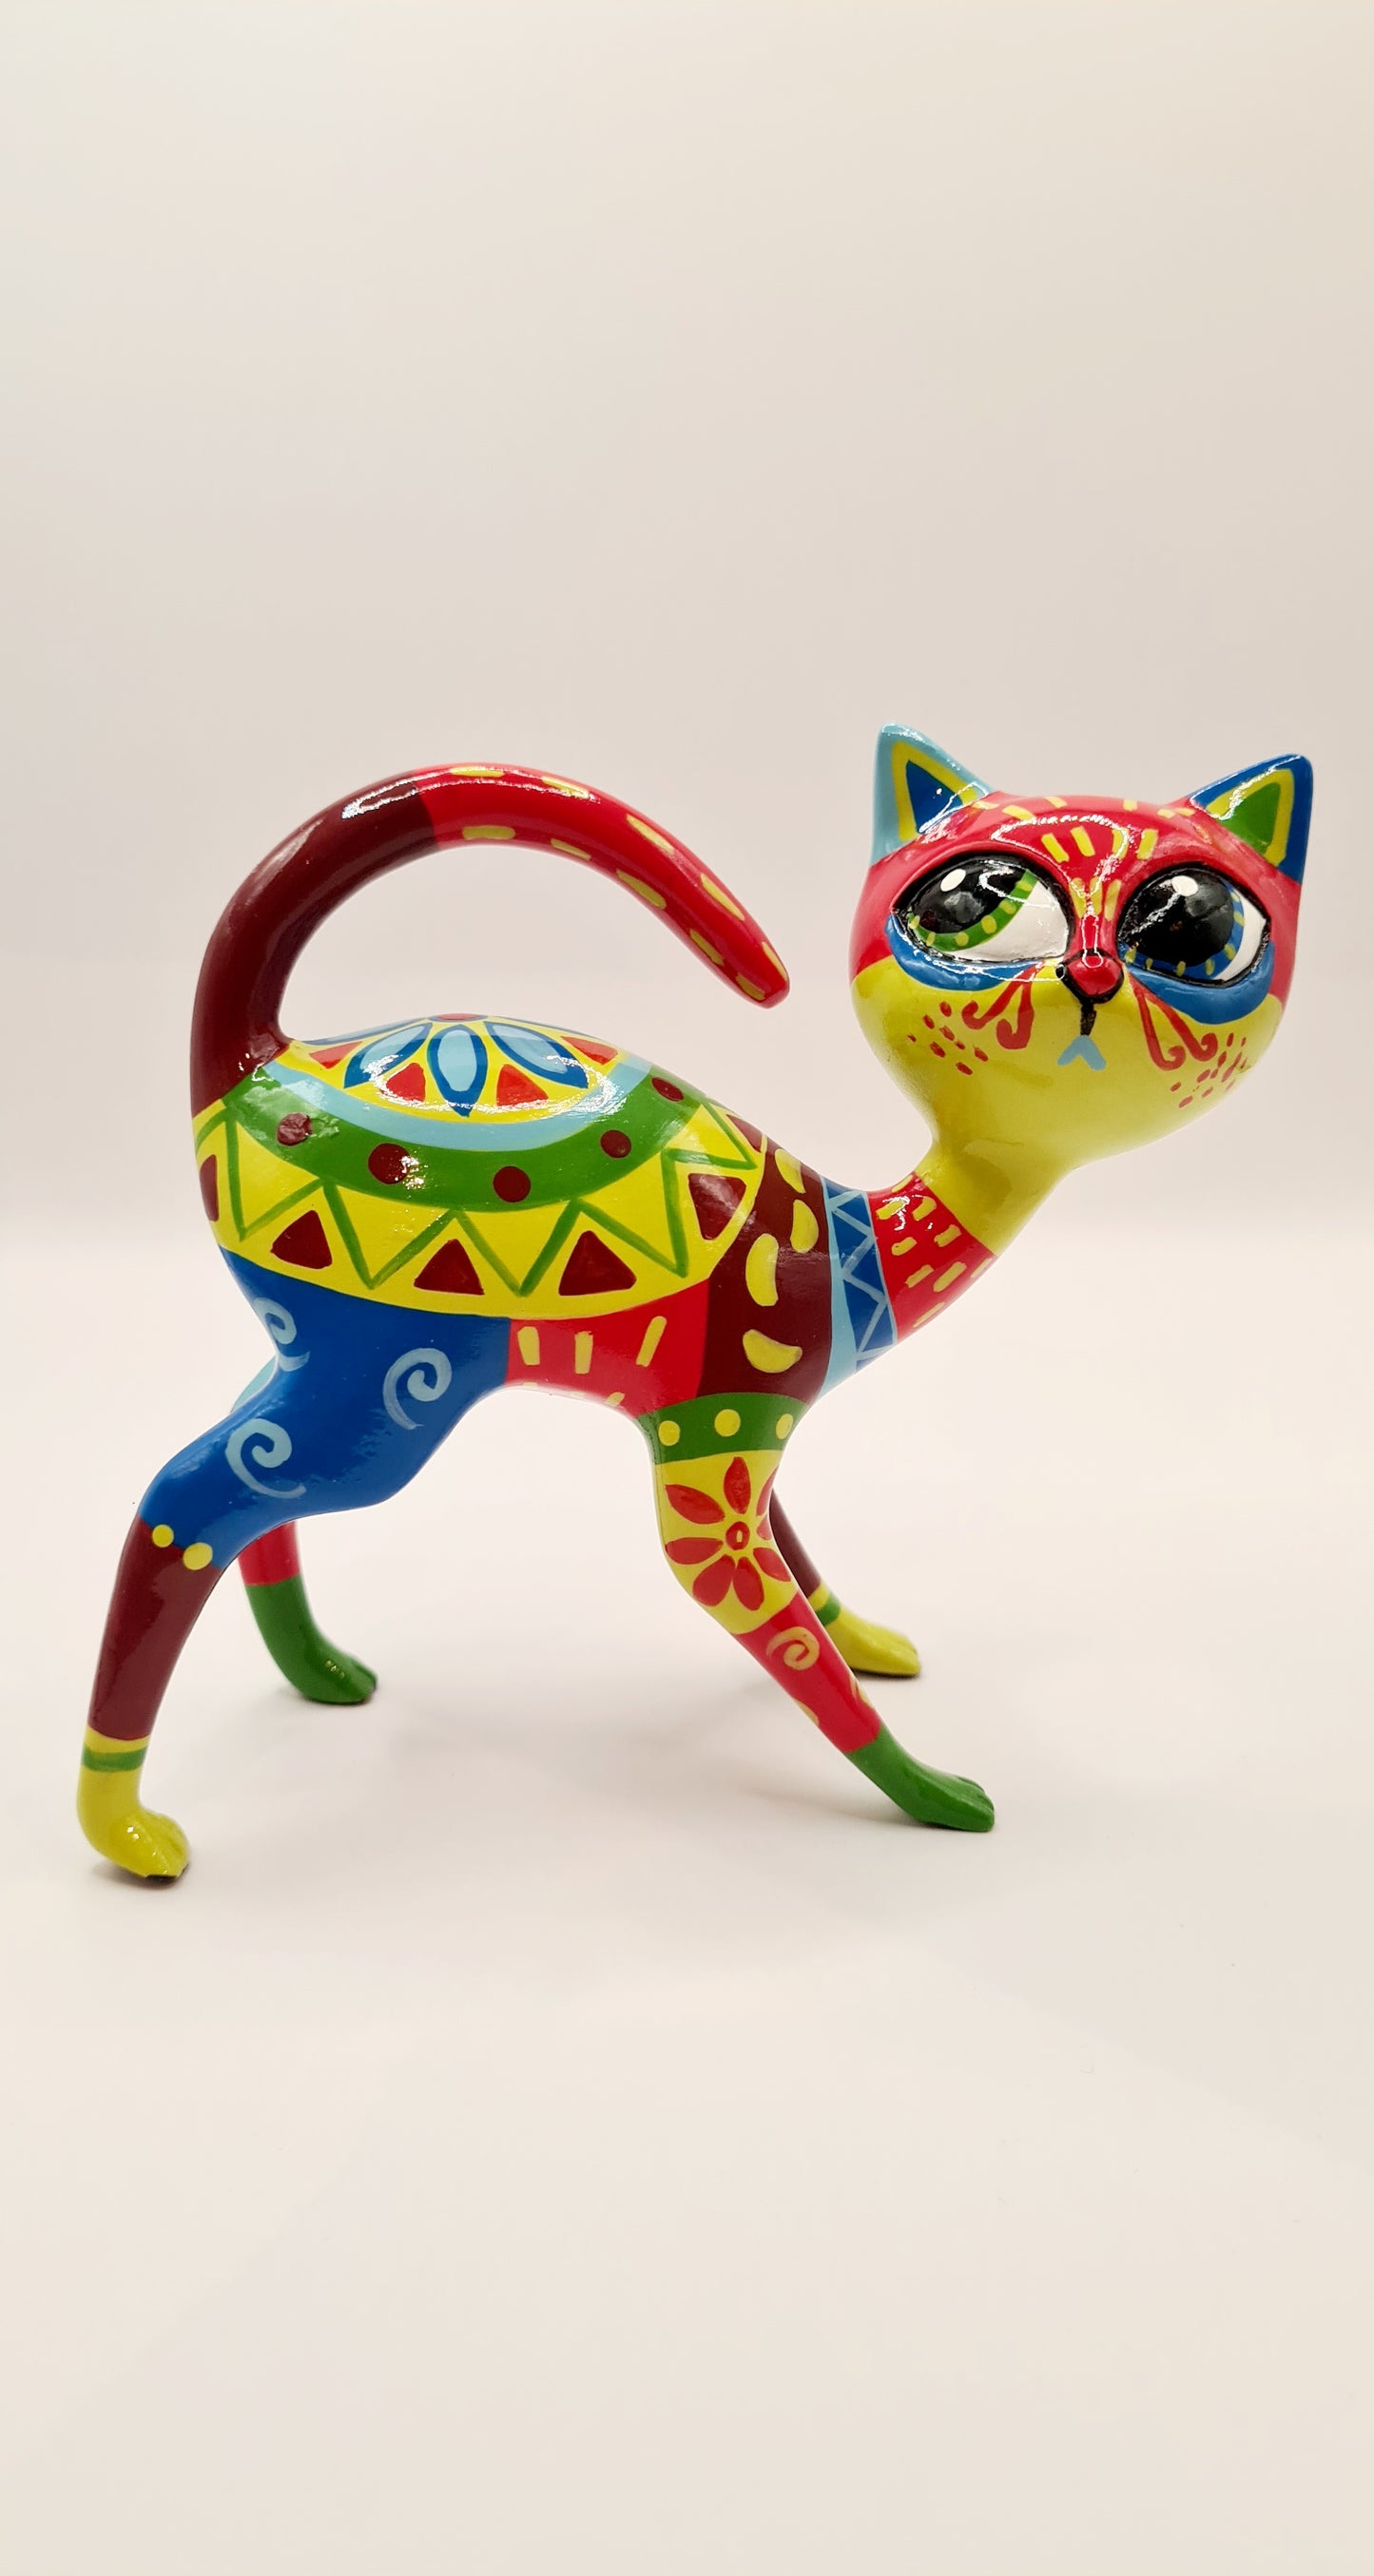 Statue chat mexicain résine multicolore. Longueur 14 centimètres